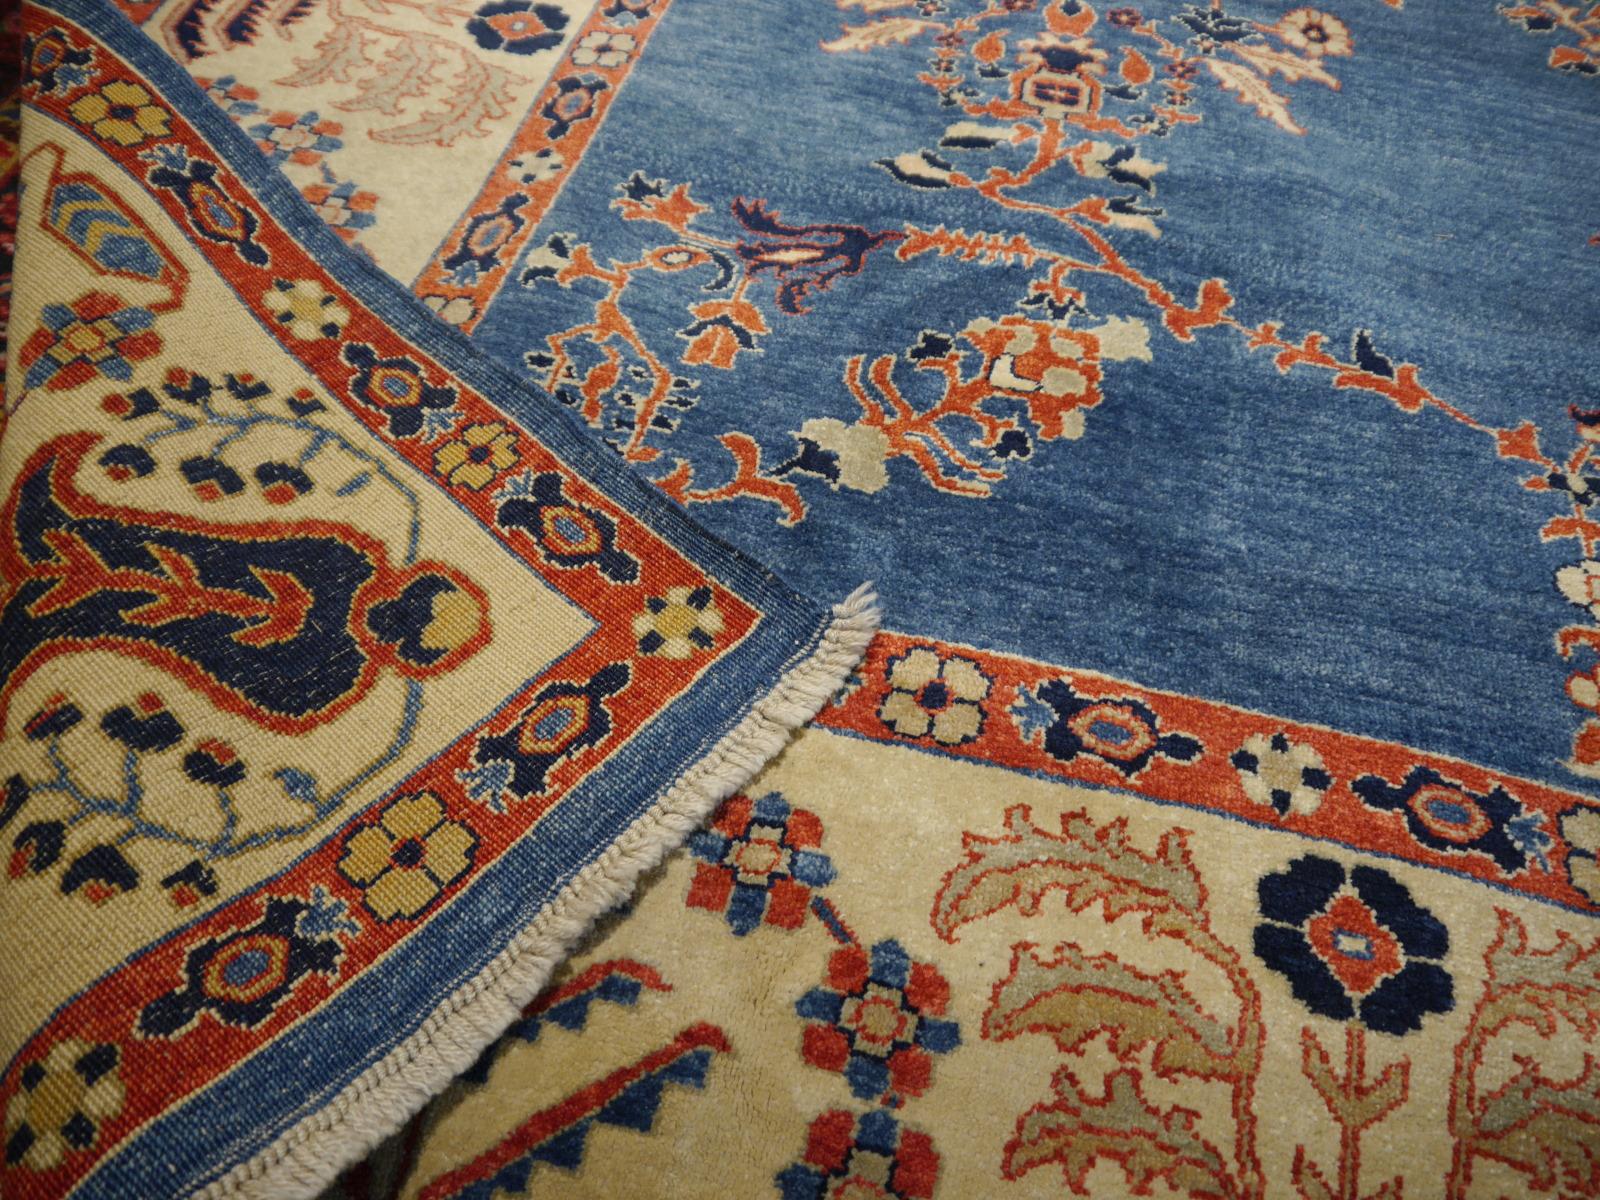 Tapis azéri de Turquie avec médaillon

Tapis azéri turc noué à la main avec un champ bleu et une bordure beige.

Les tapis azéris sont principalement constitués de laine fine filée à la main, 
Ce magnifique exemple provient de l'est de l'Anatolie. 